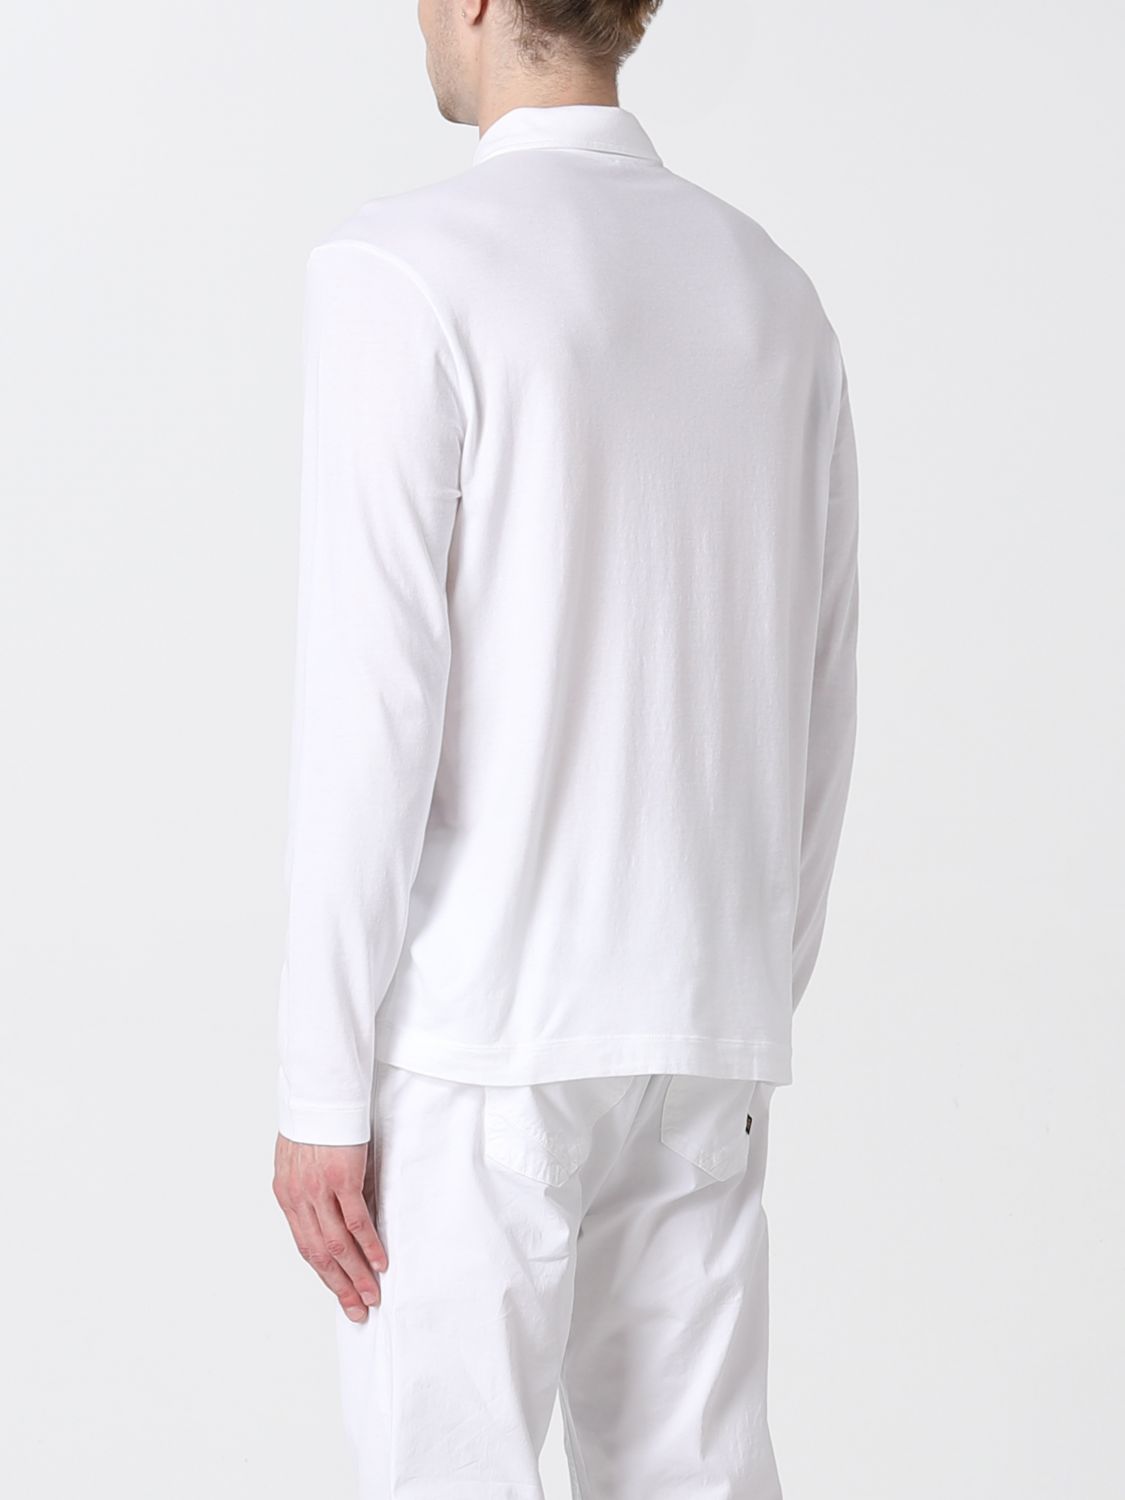 ポロシャツ Malo: ポロシャツ Malo メンズ ホワイト 2